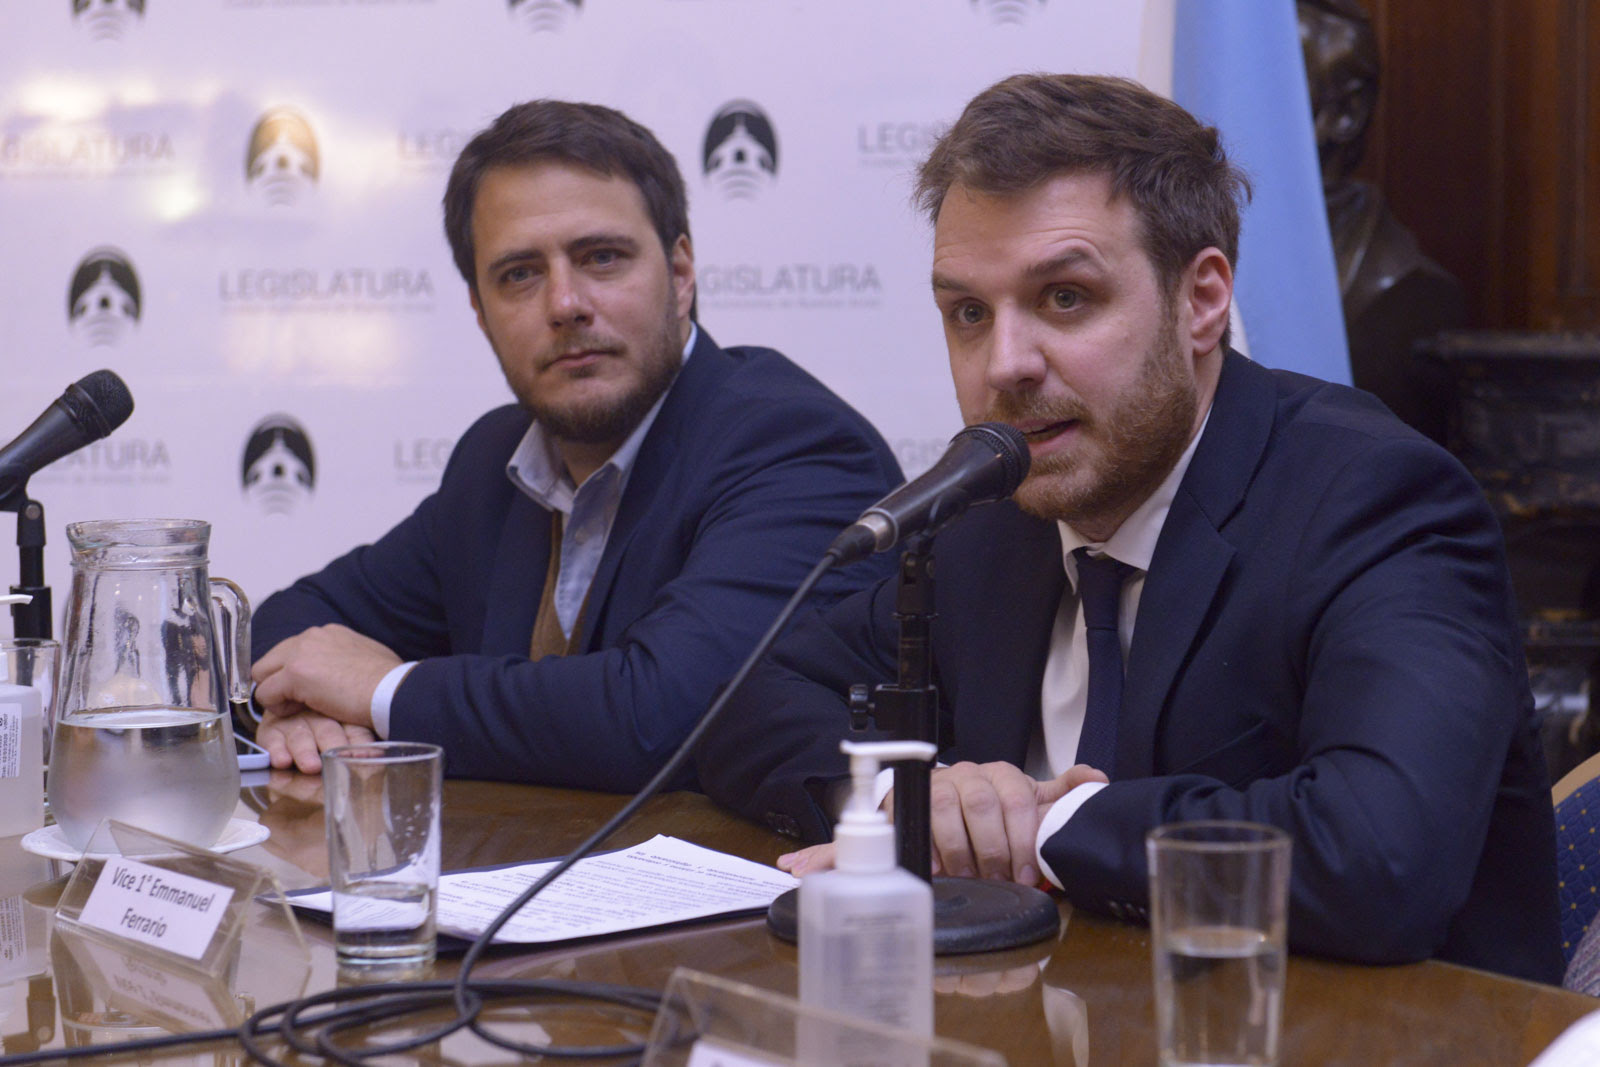 El vicepresidente primero de la Legislatura Porteña, Emmanuel Ferrario (VJ), y el titular de la comisión de Asuntos Constitucionales, Hernán Reyes (VJ).